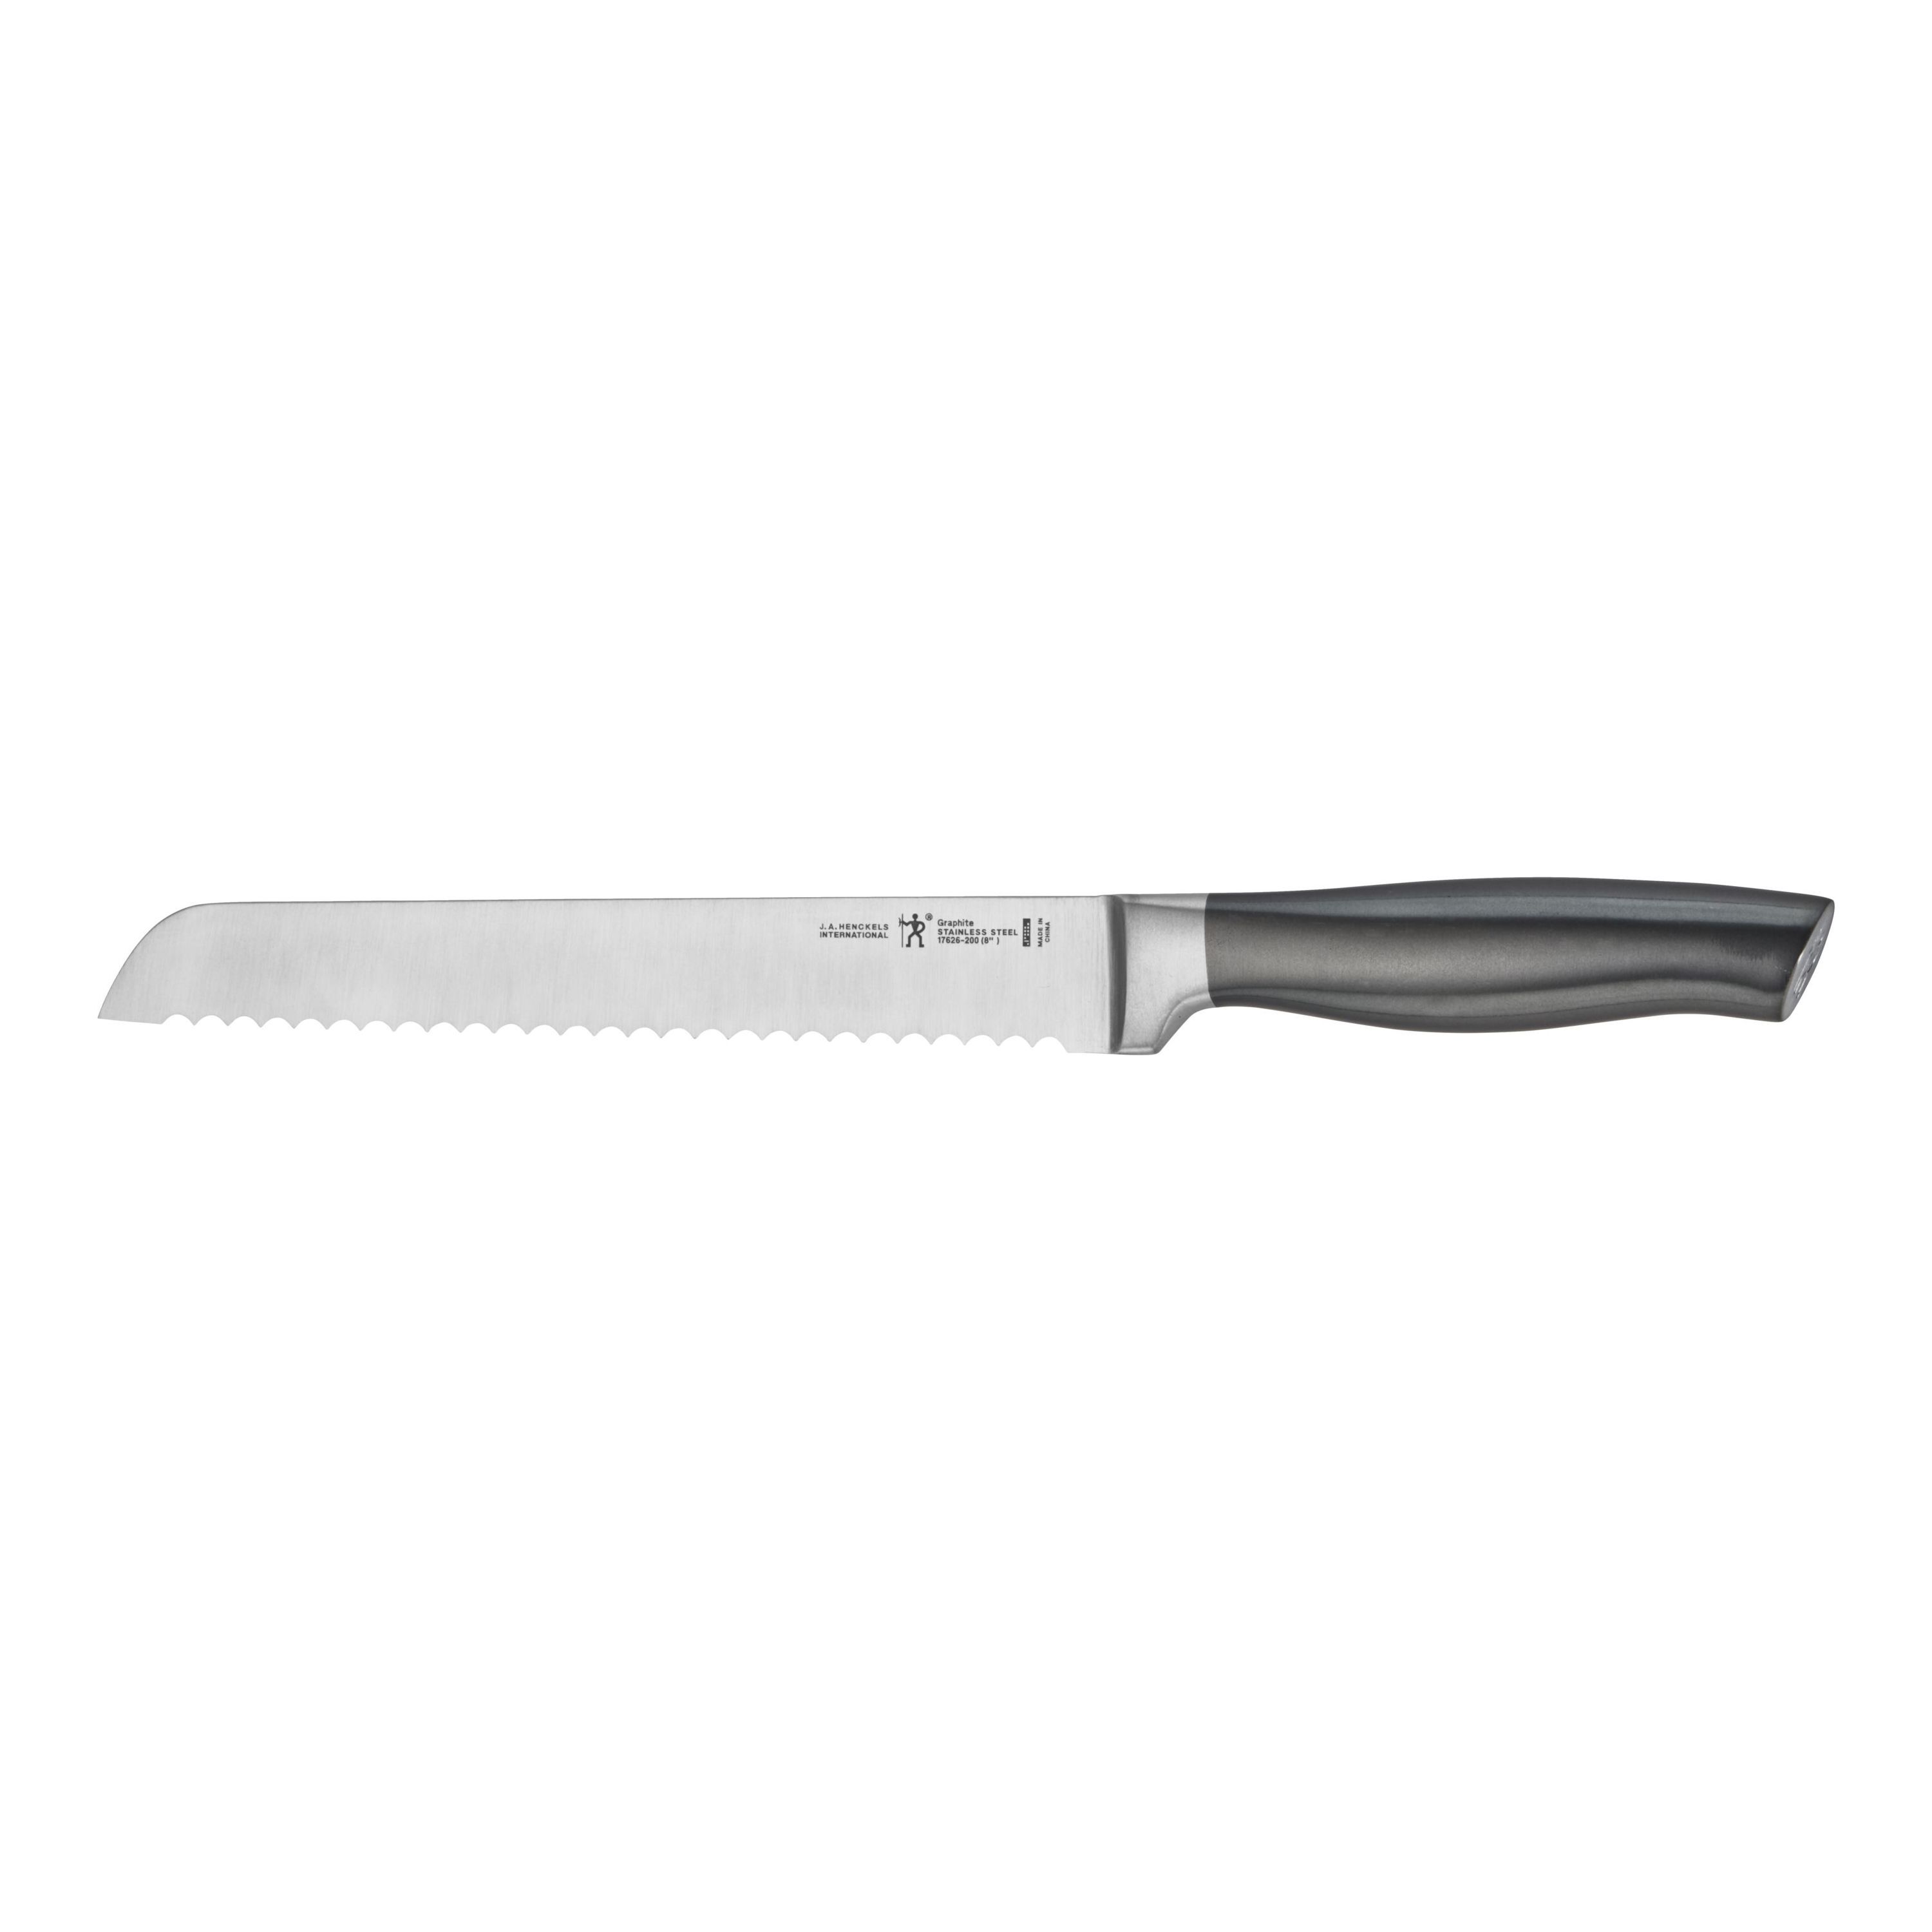 8-inch, Bread knife